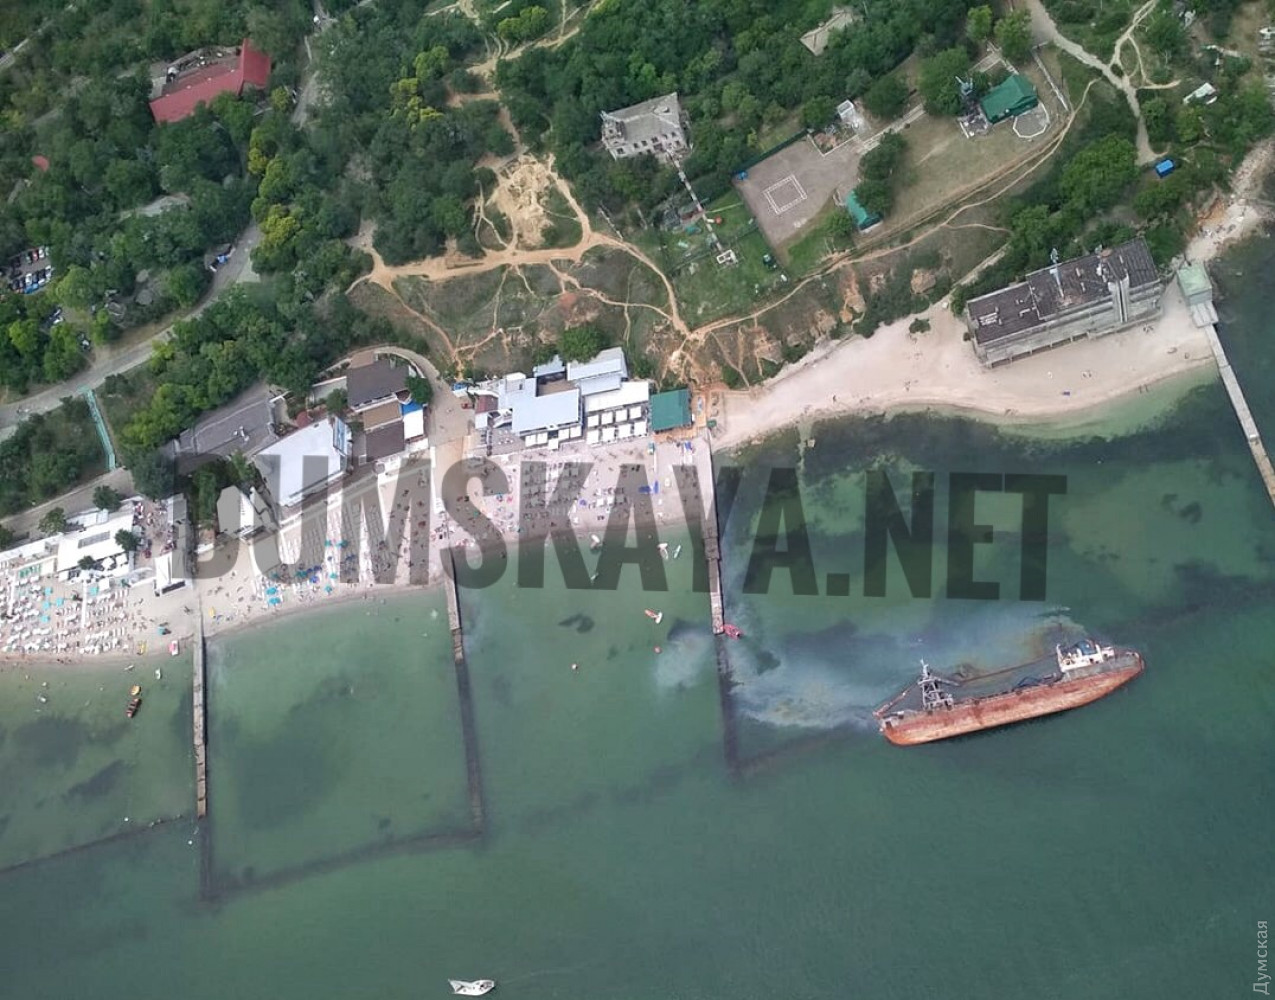 Розлив нафти біля берегів Одеси. Фото: Думська